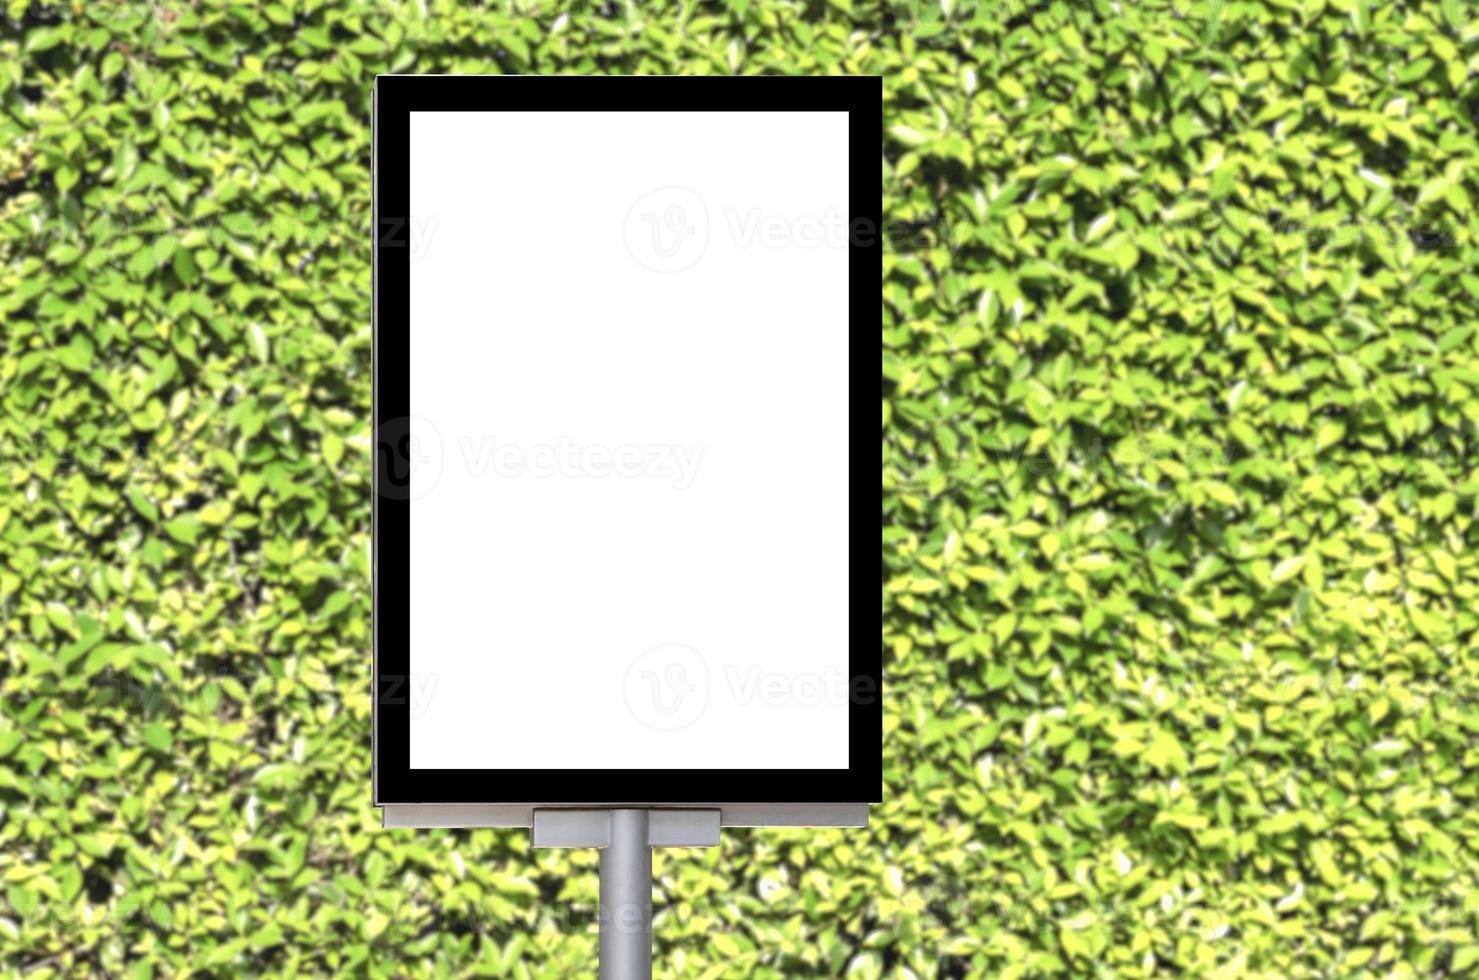 buitenshuis pool aanplakbord met bespotten omhoog wit scherm Aan groen blad natuurlijk achtergrond en knipsel pad foto